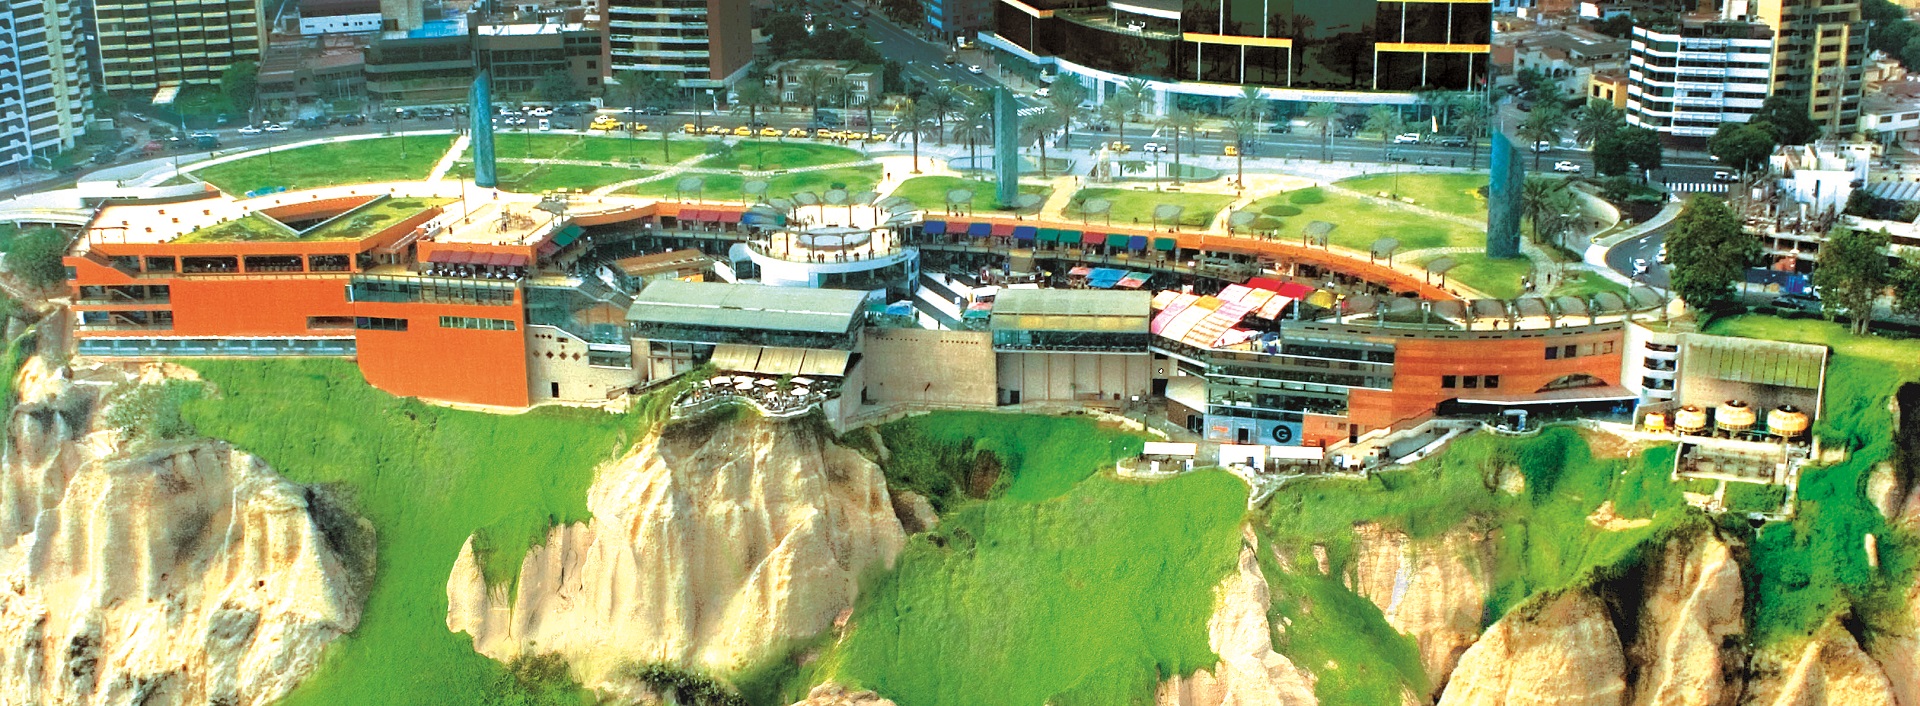 CUMBRA: Hotel Marriott y Larcomar, obras emblemáticas para el turismo en Lima